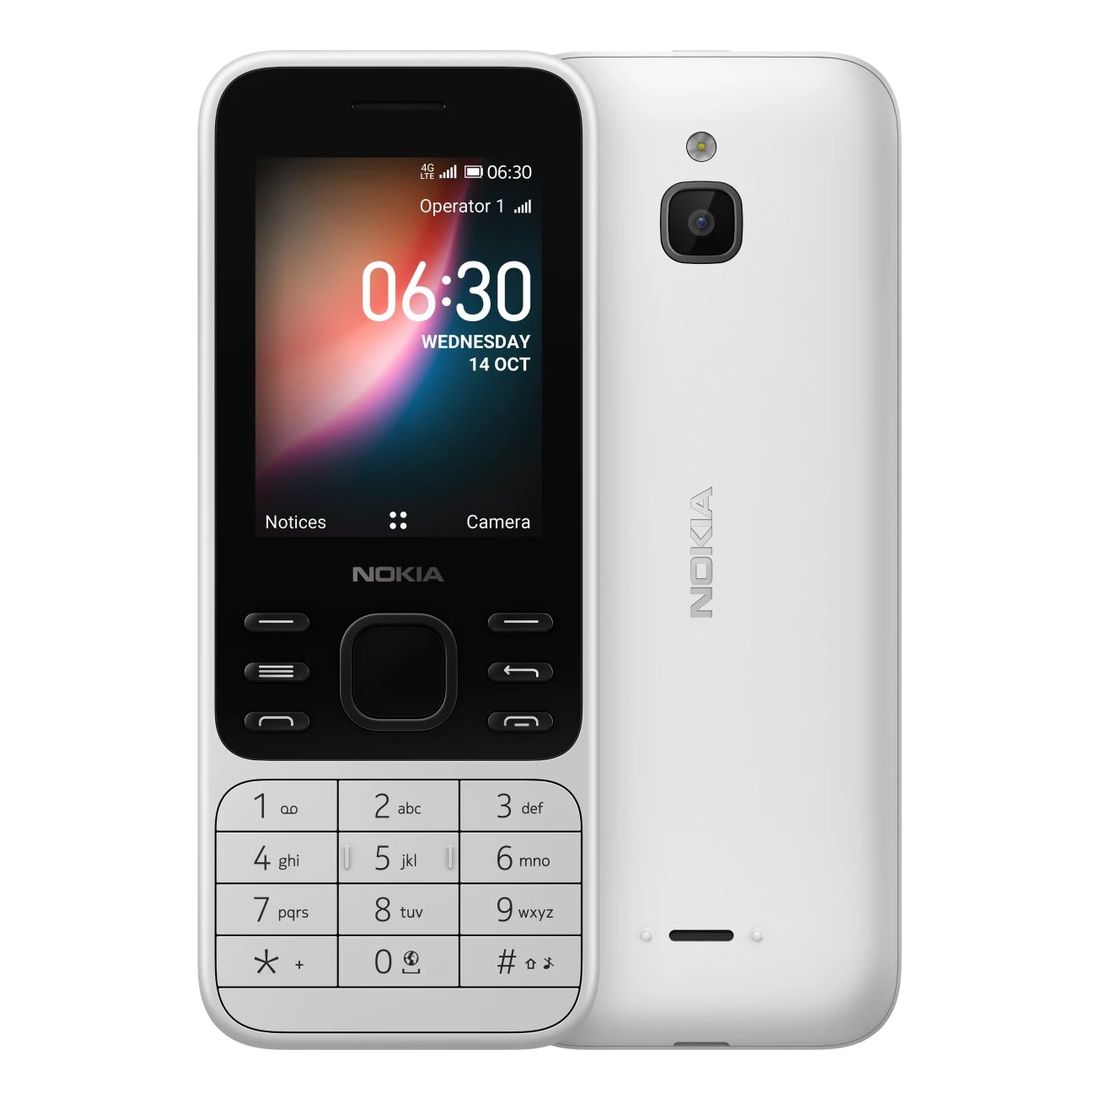 Nokia 6300 4G TA-1287 Mobile Phone 512MB/4GB White